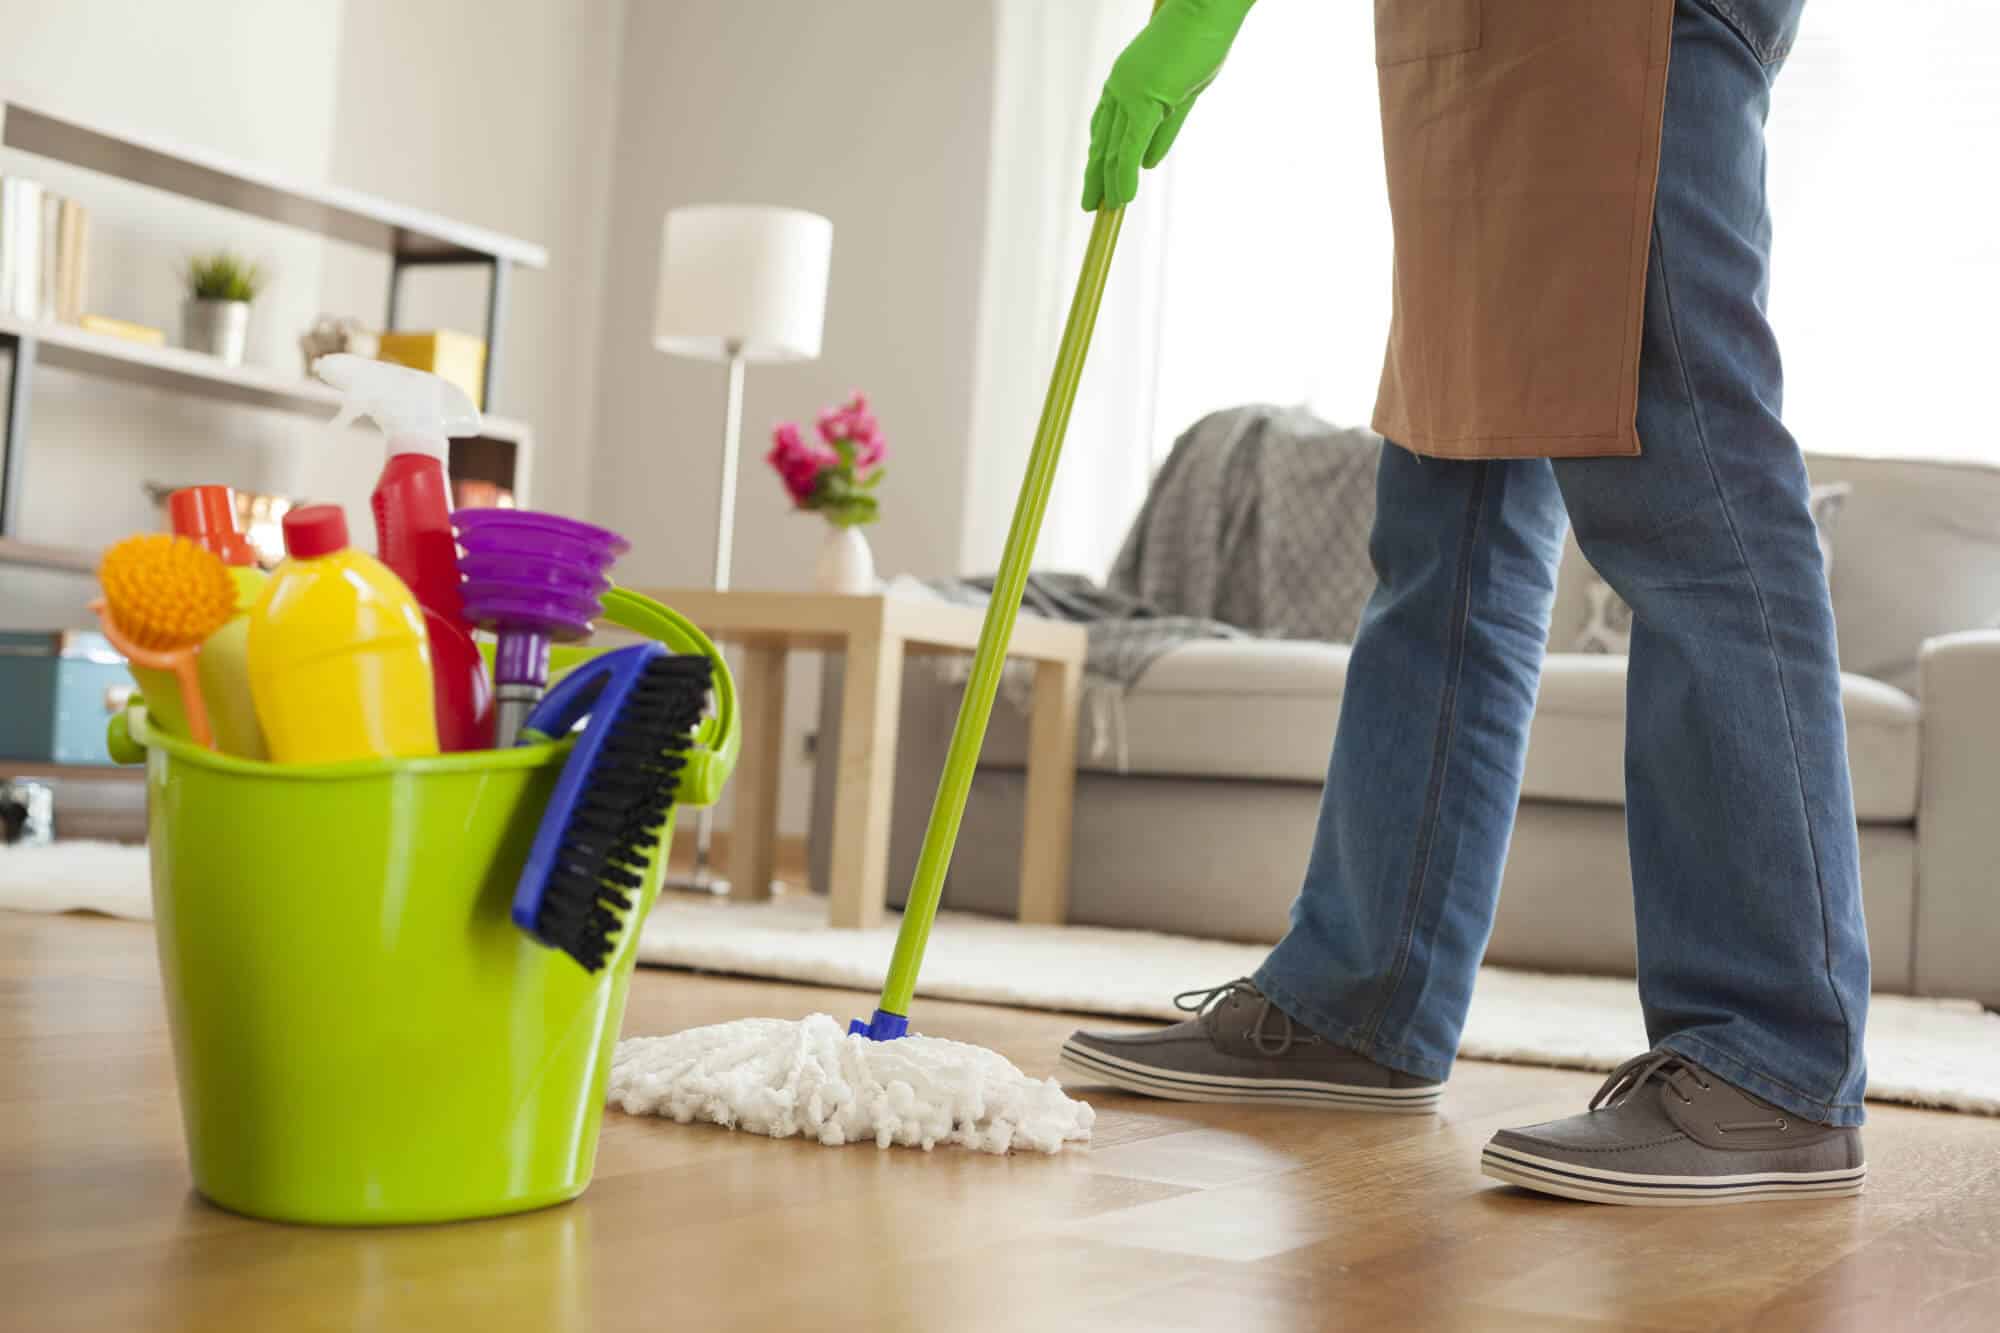 áp dụng quy tắc 15 phút để dọn dẹp nhà